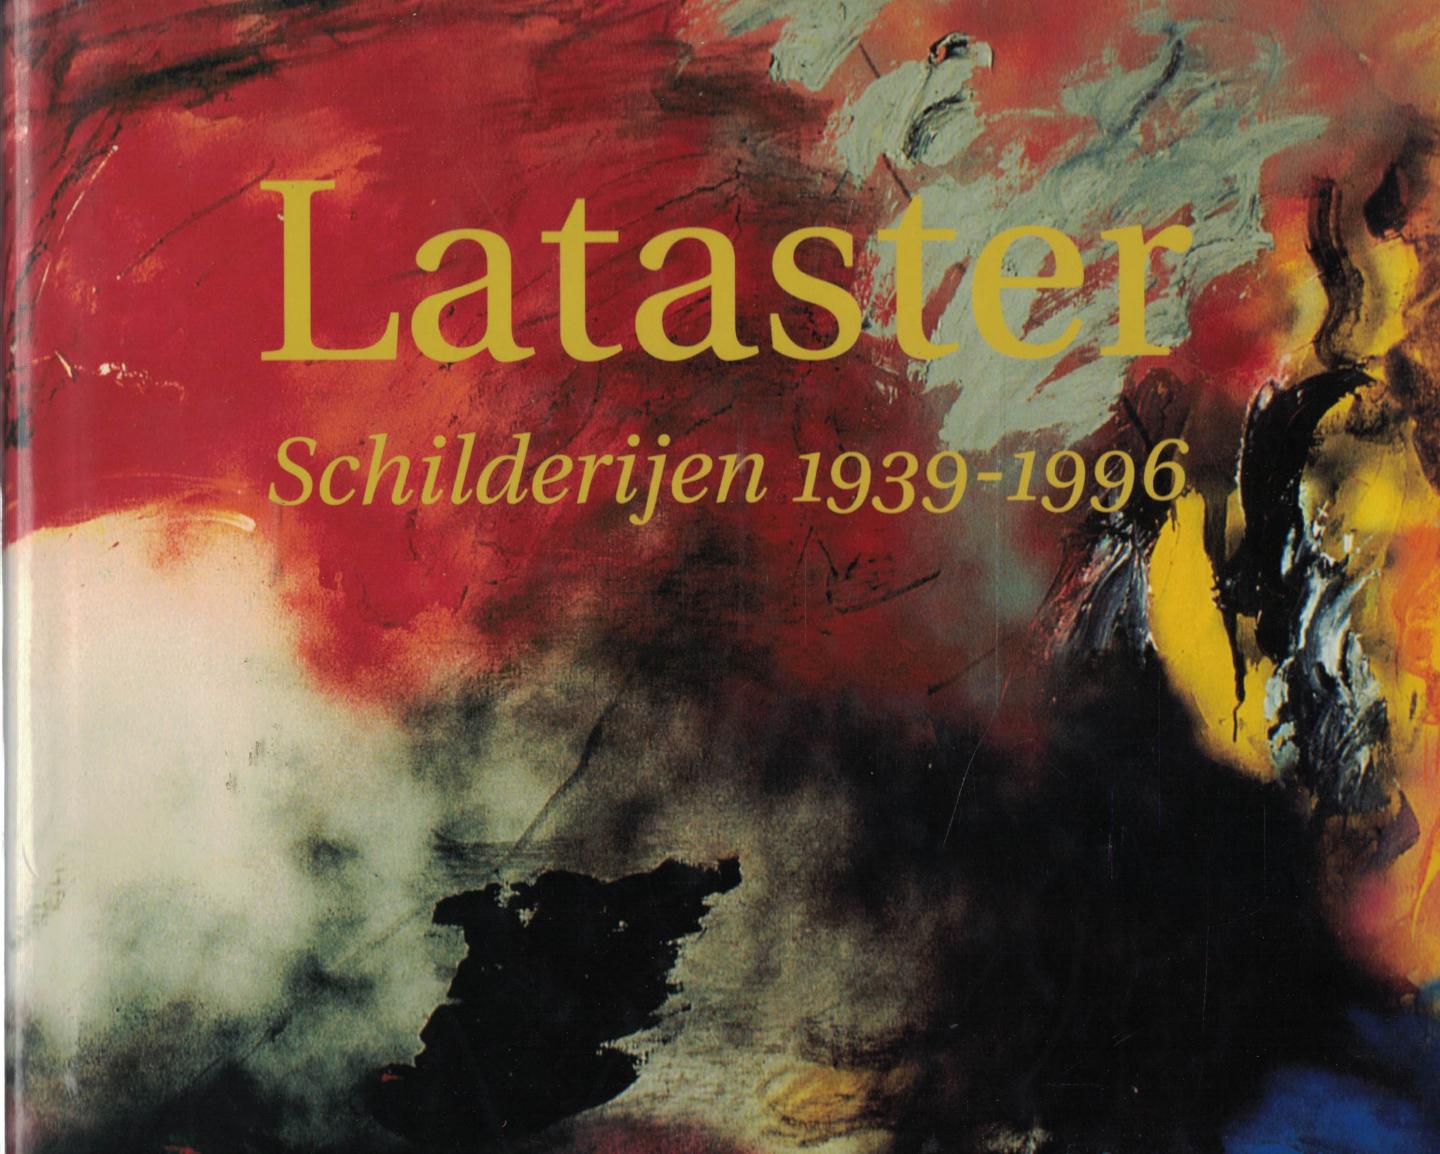 Alexander van Grevenstein, Daniël Lataster, Bert Schierbeek, Thei Voragen & Hans van Waarsenburg (teksten) - Lataster / schilderijen 1939-1996